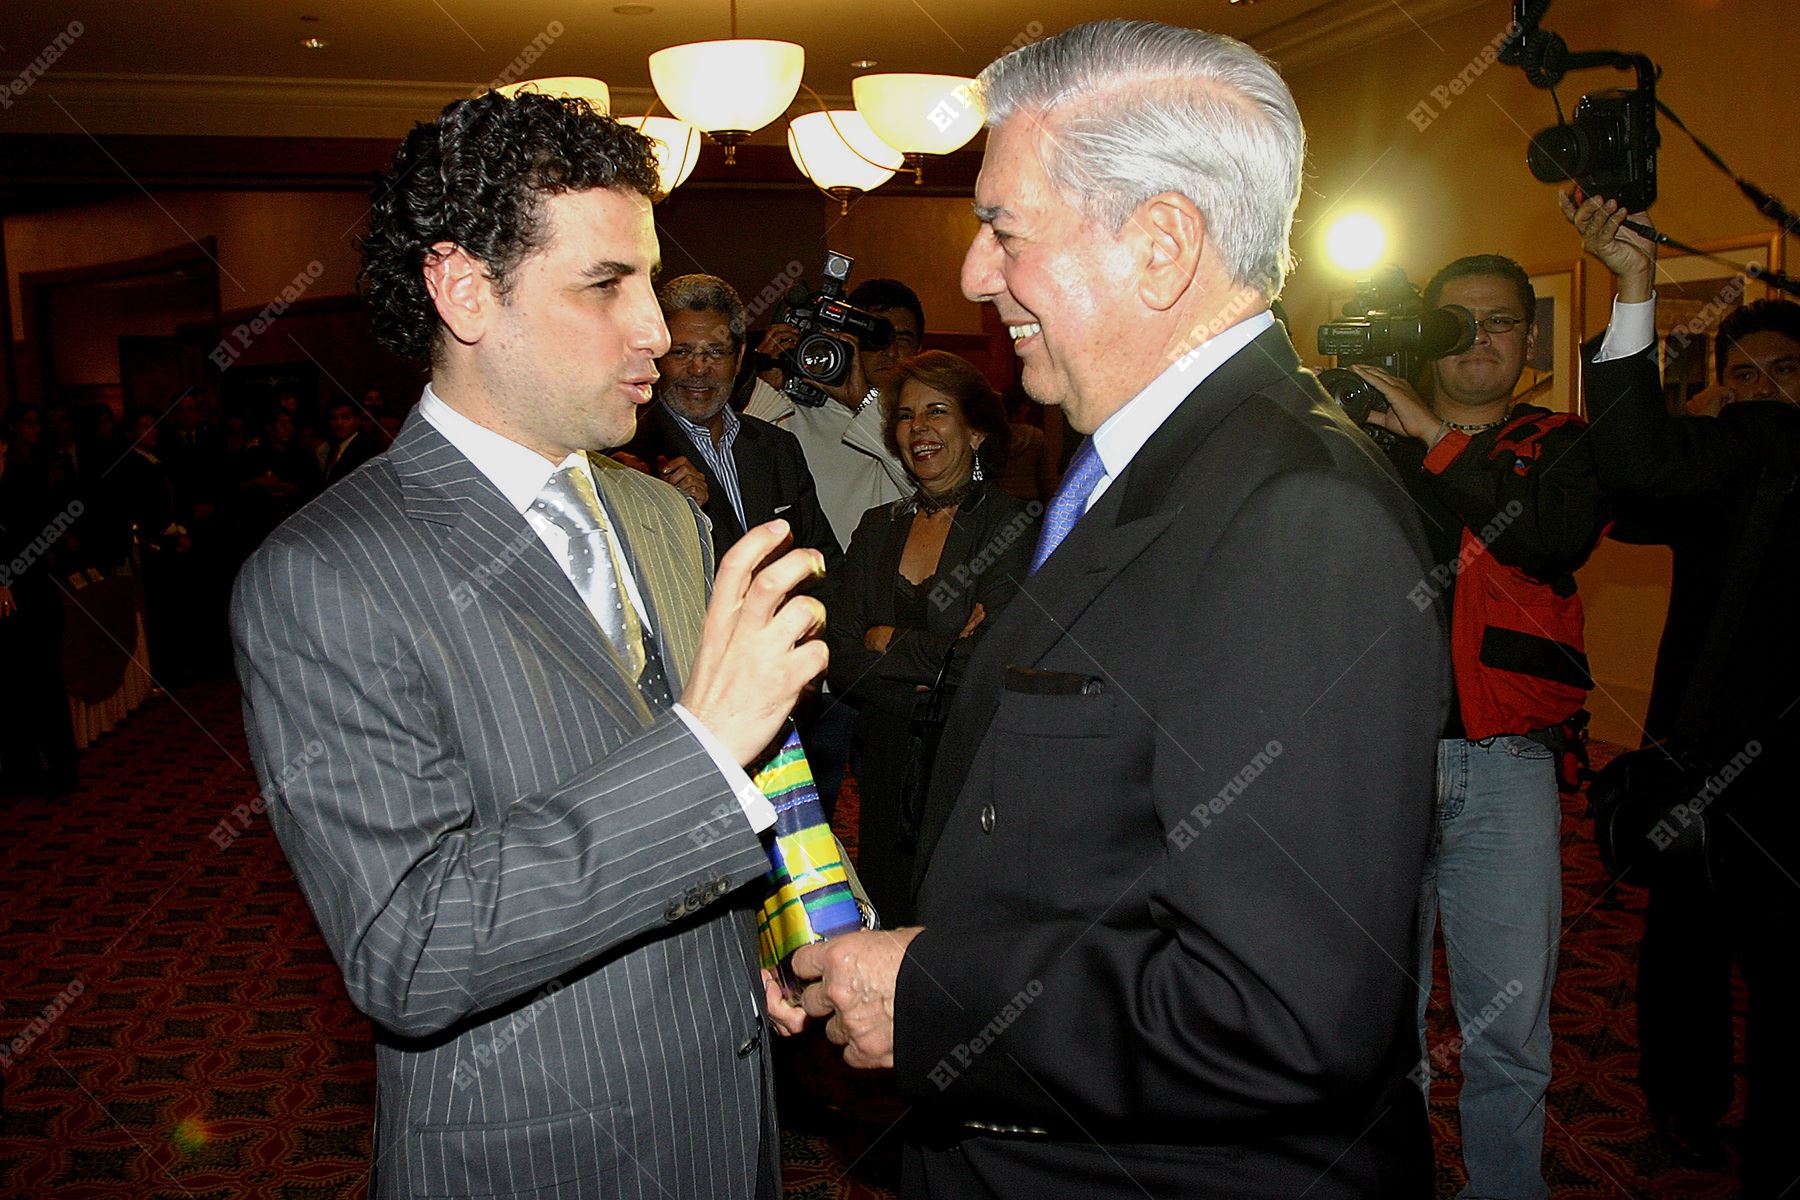 Lima - 30 mayo 2007 / El tenor Juan Diego Flórez y el escritor Mario Vargas Llosa conversan luego de la presentación de un libro sobre la vida del tenor peruano. Foto: Diario Oficial El Peruano / Alberto Orbegoso